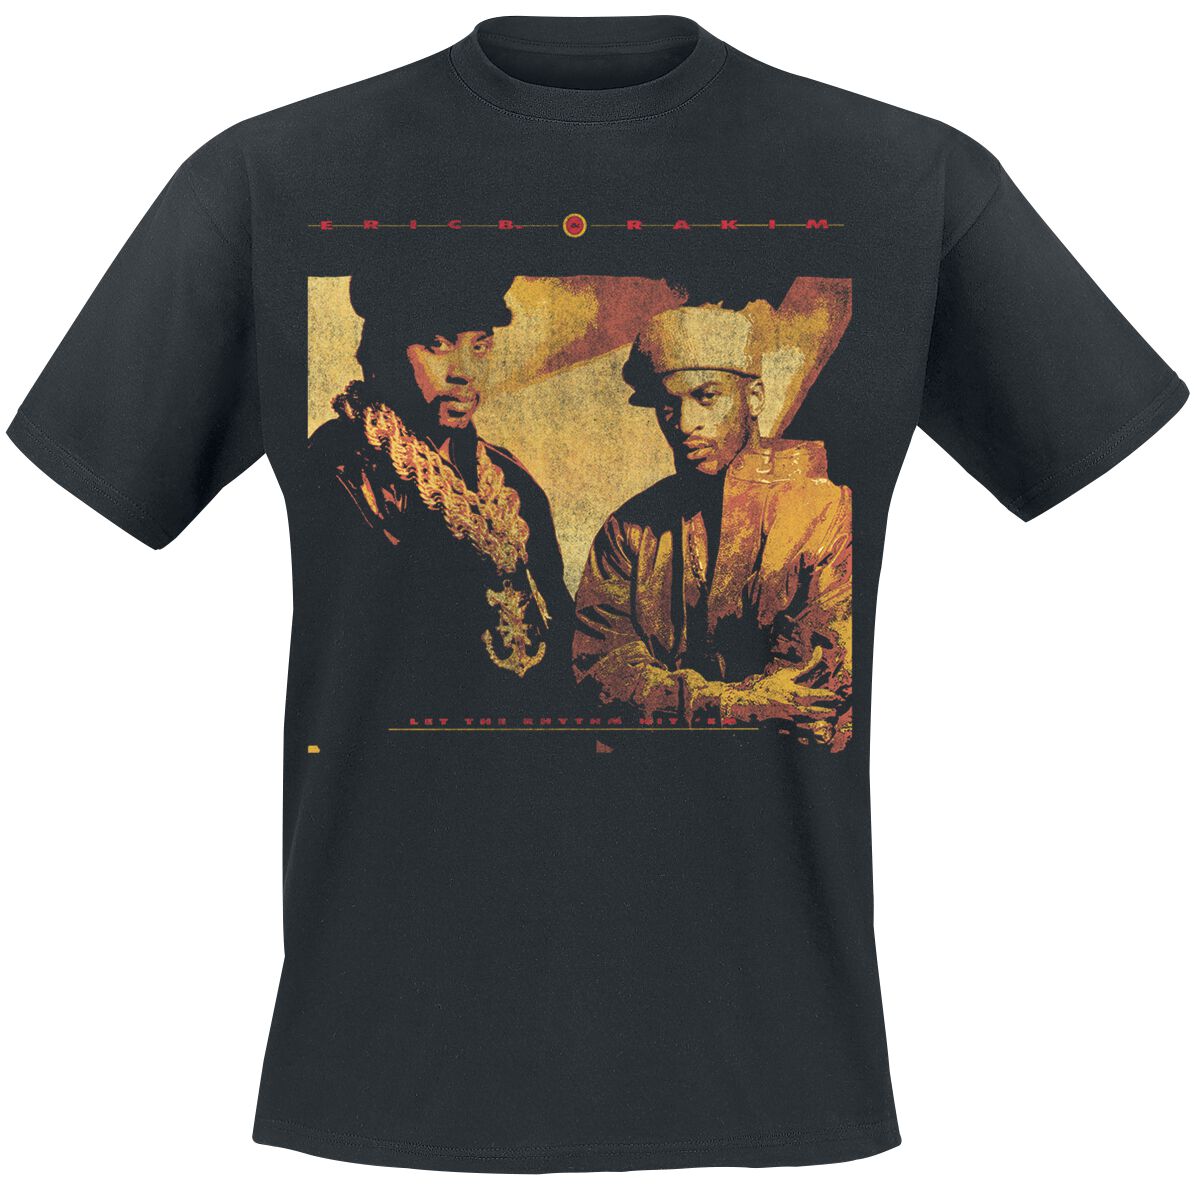 Eric B. & Rakim T-Shirt - Rhythm Hit Em - S bis 3XL - für Männer - Größe XXL - schwarz  - Lizenziertes Merchandise!